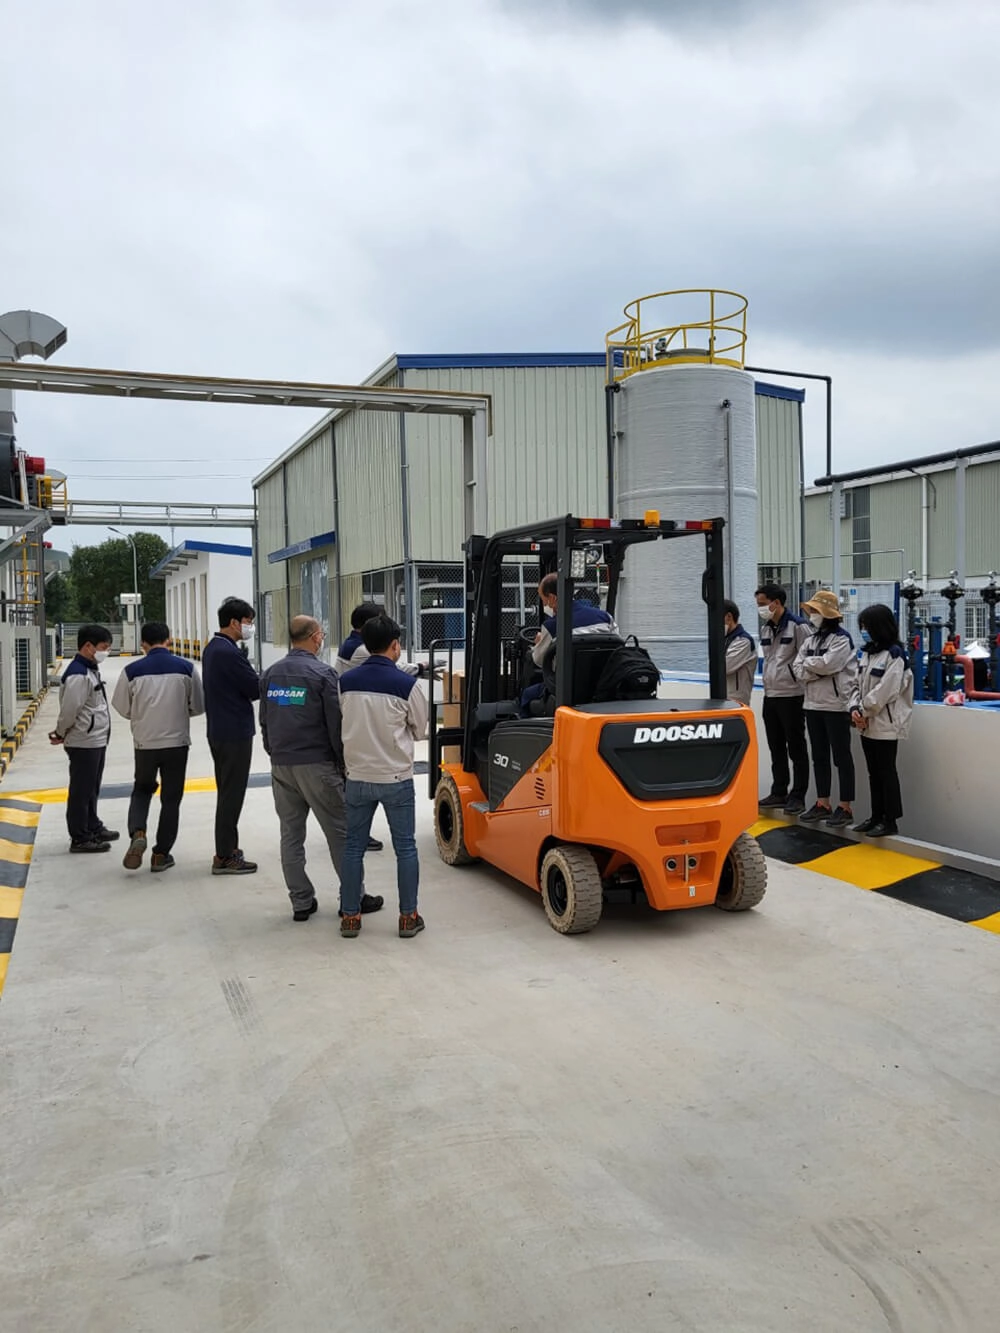 xe nâng điện 3 tấn Doosan bàn giao cho công ty Phúc Hưng